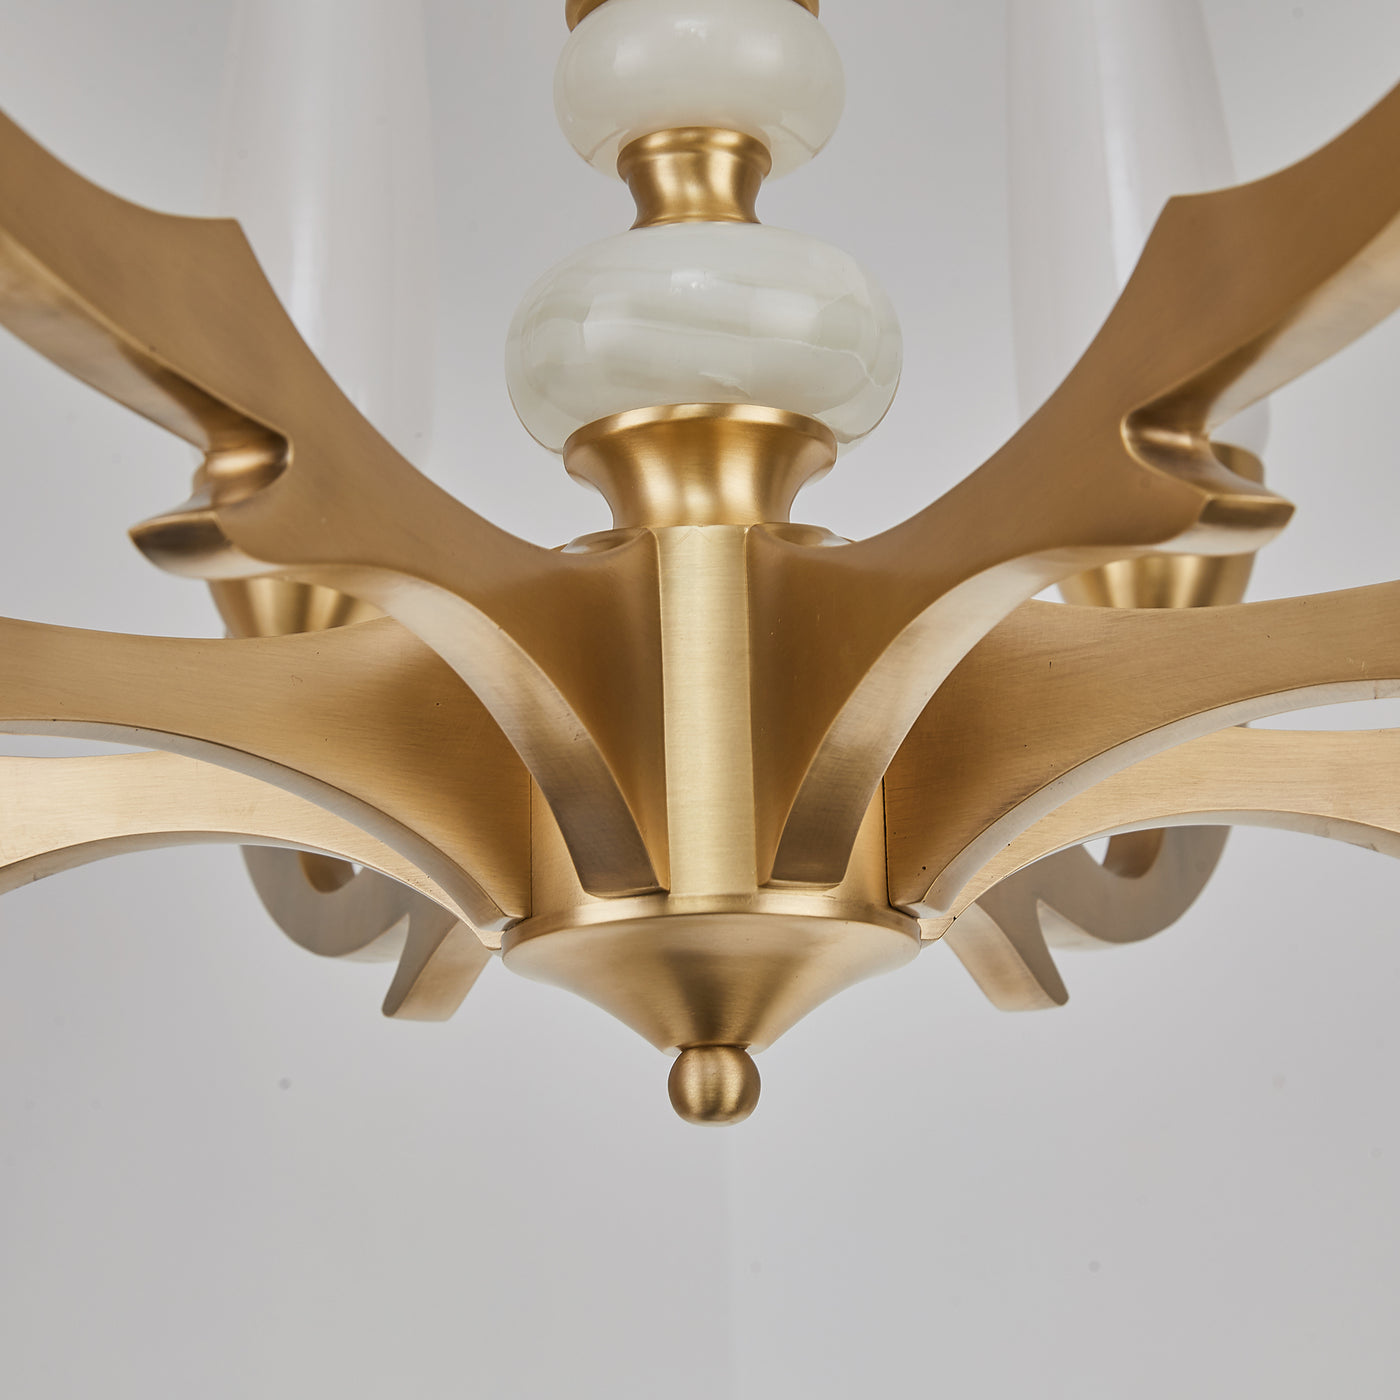 Creative golden chandelier